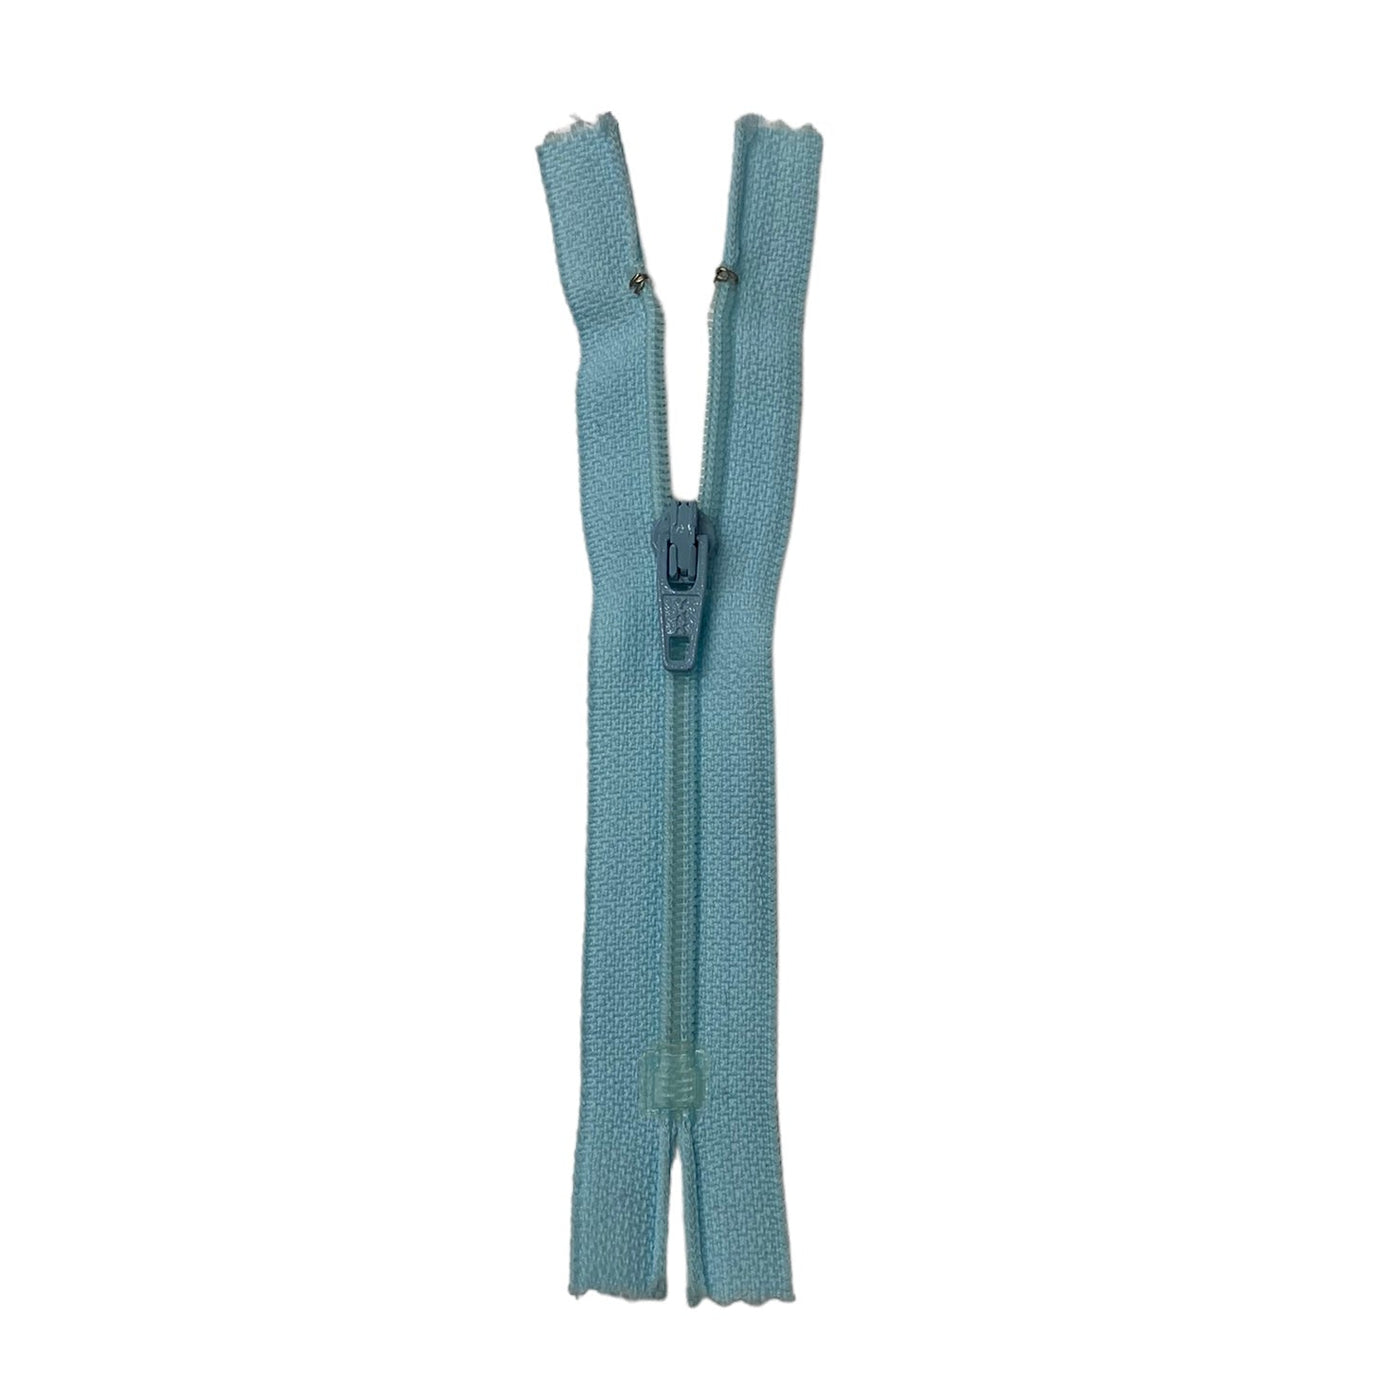 Regular Coil Zipper - YKK - 4” - Light Blue